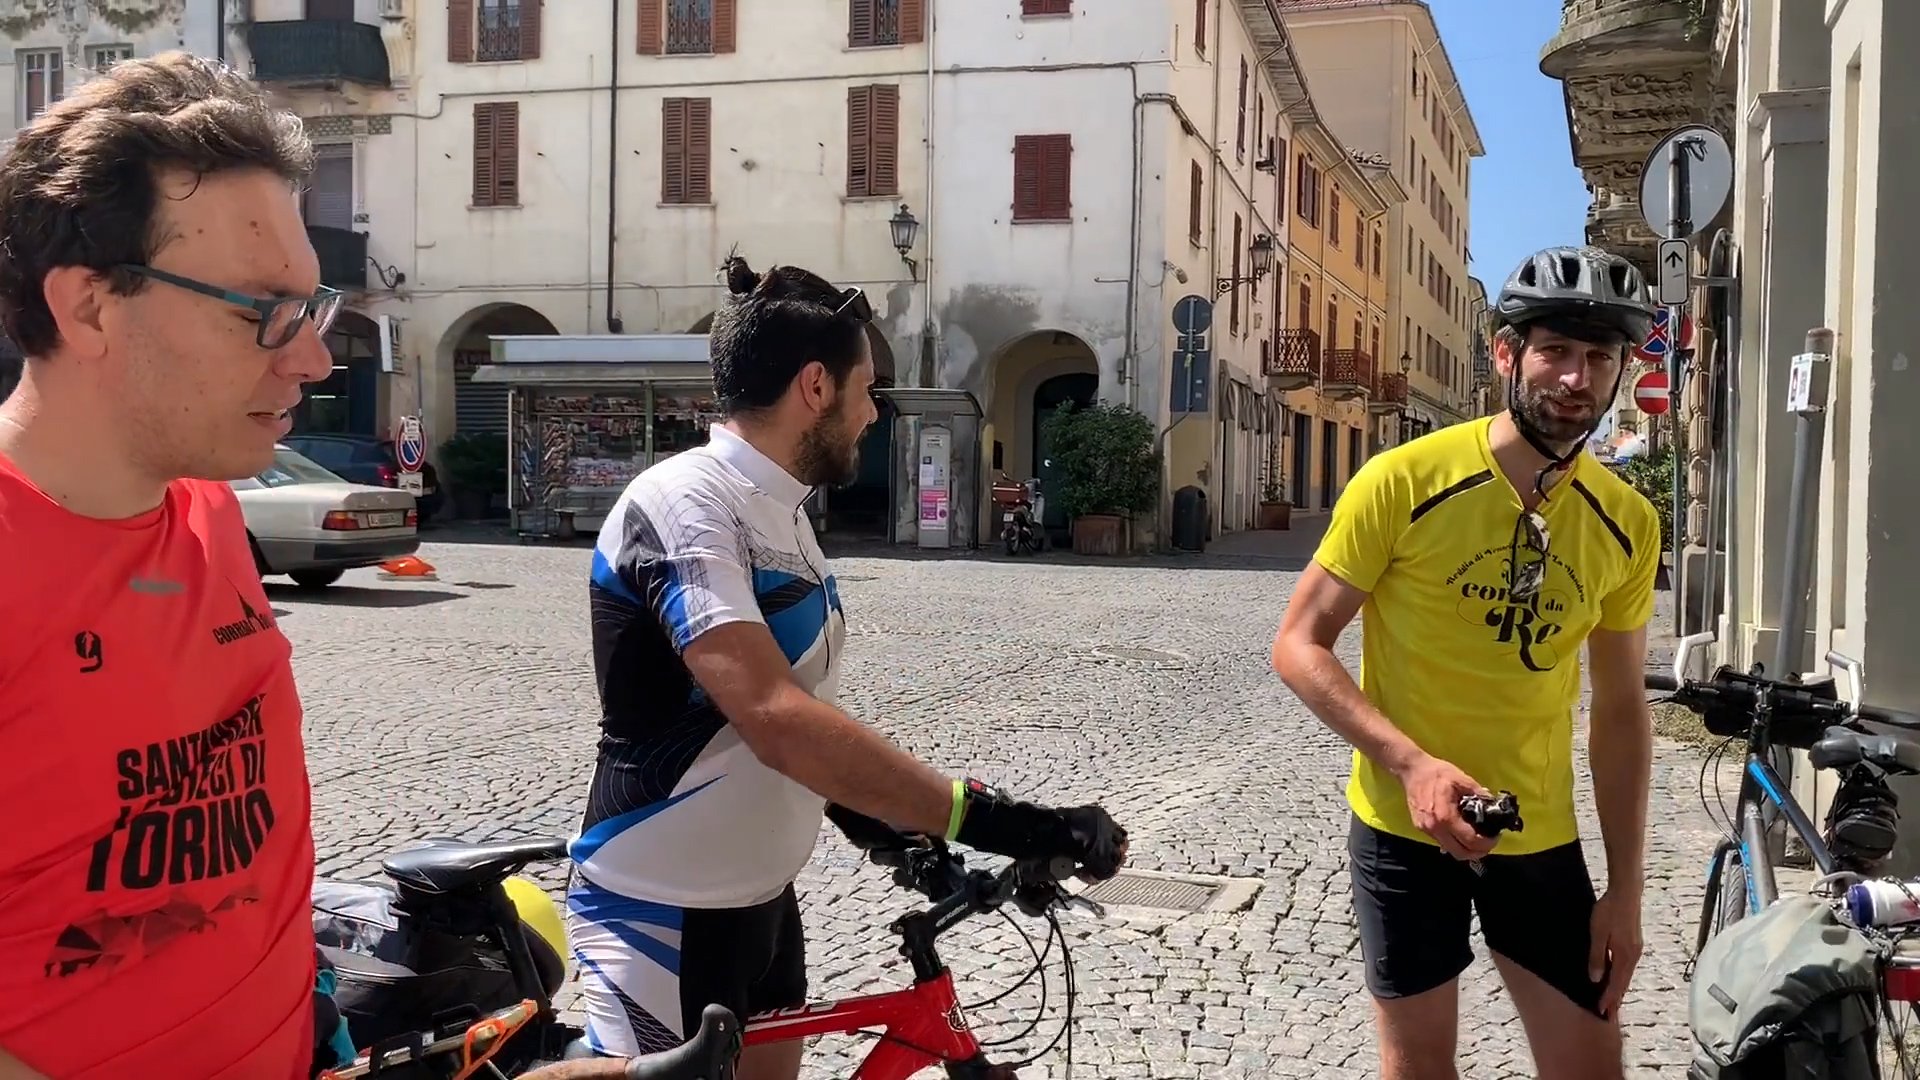 Da Torino a Venezia in bici per dimostrare che Vento ha grandi potenzialità